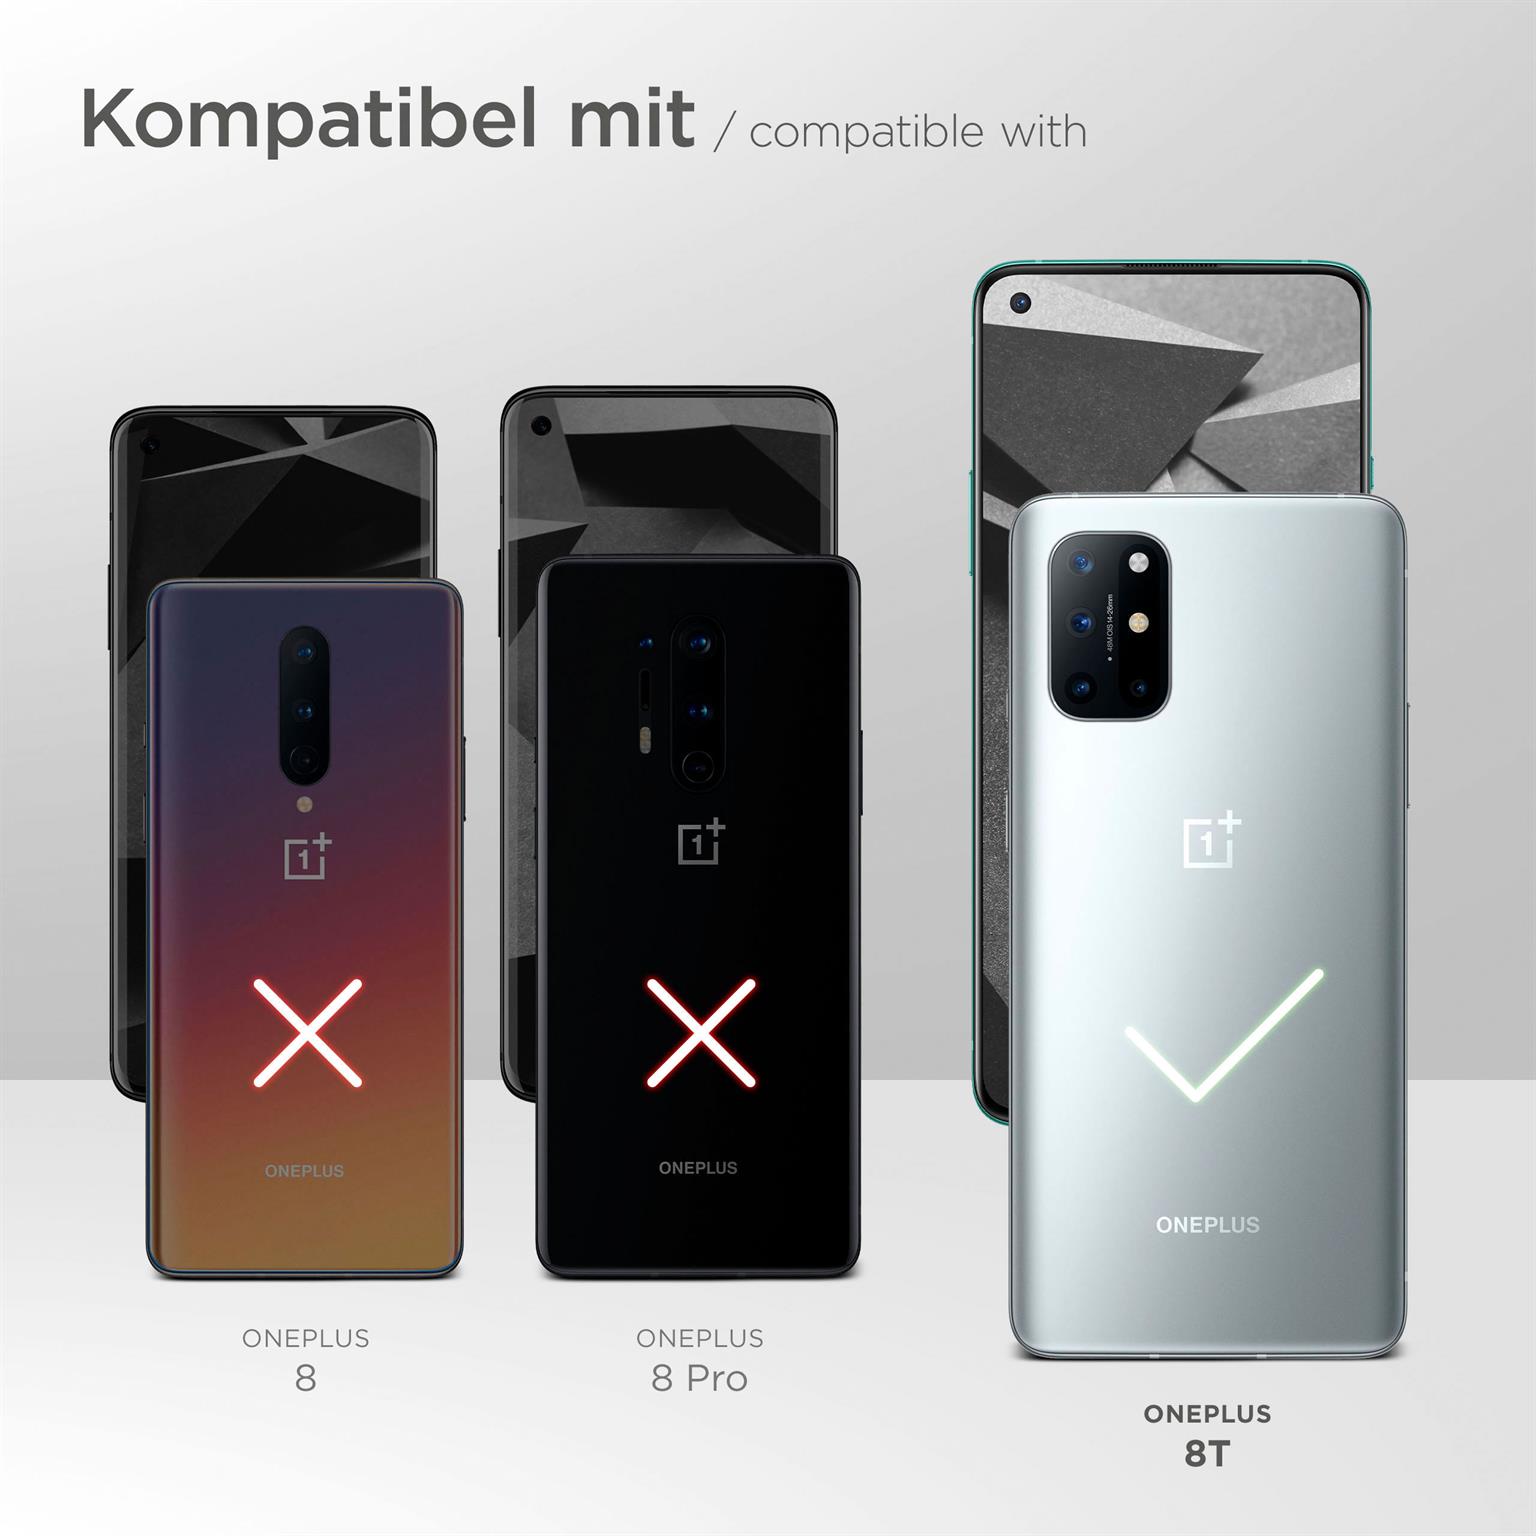 moex Alpha Case für OnePlus 8T – Extrem dünne, minimalistische Hülle in seidenmatt